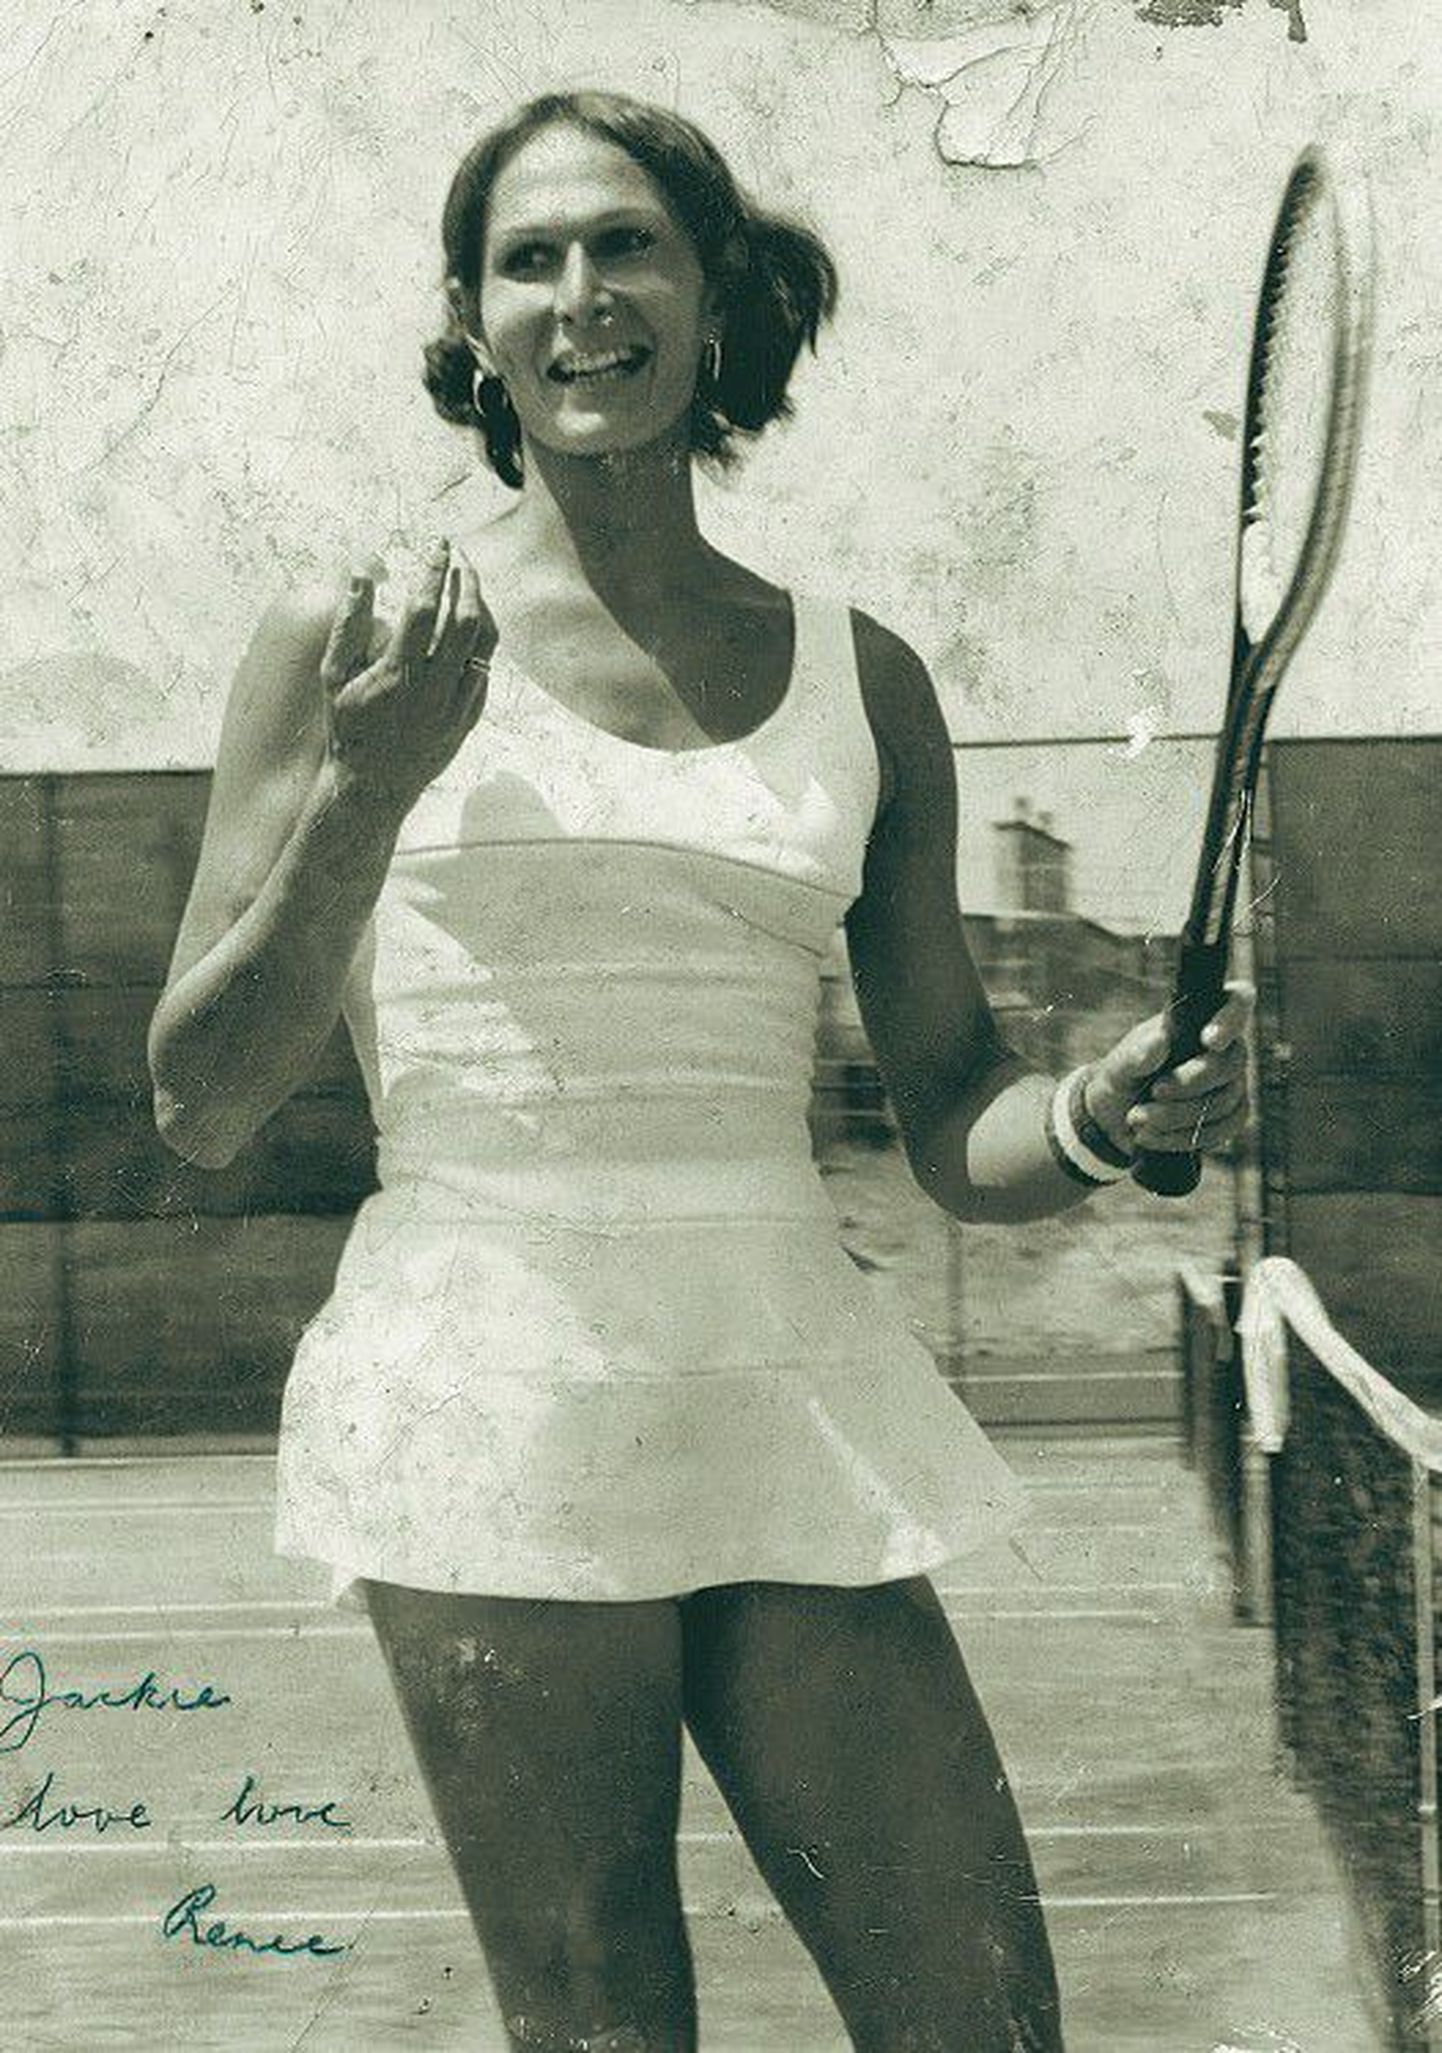 Теннисистка Рени Ричардс, сделавшая операцию по смене пола, в 1977 году получила право выступать в женском разряде.